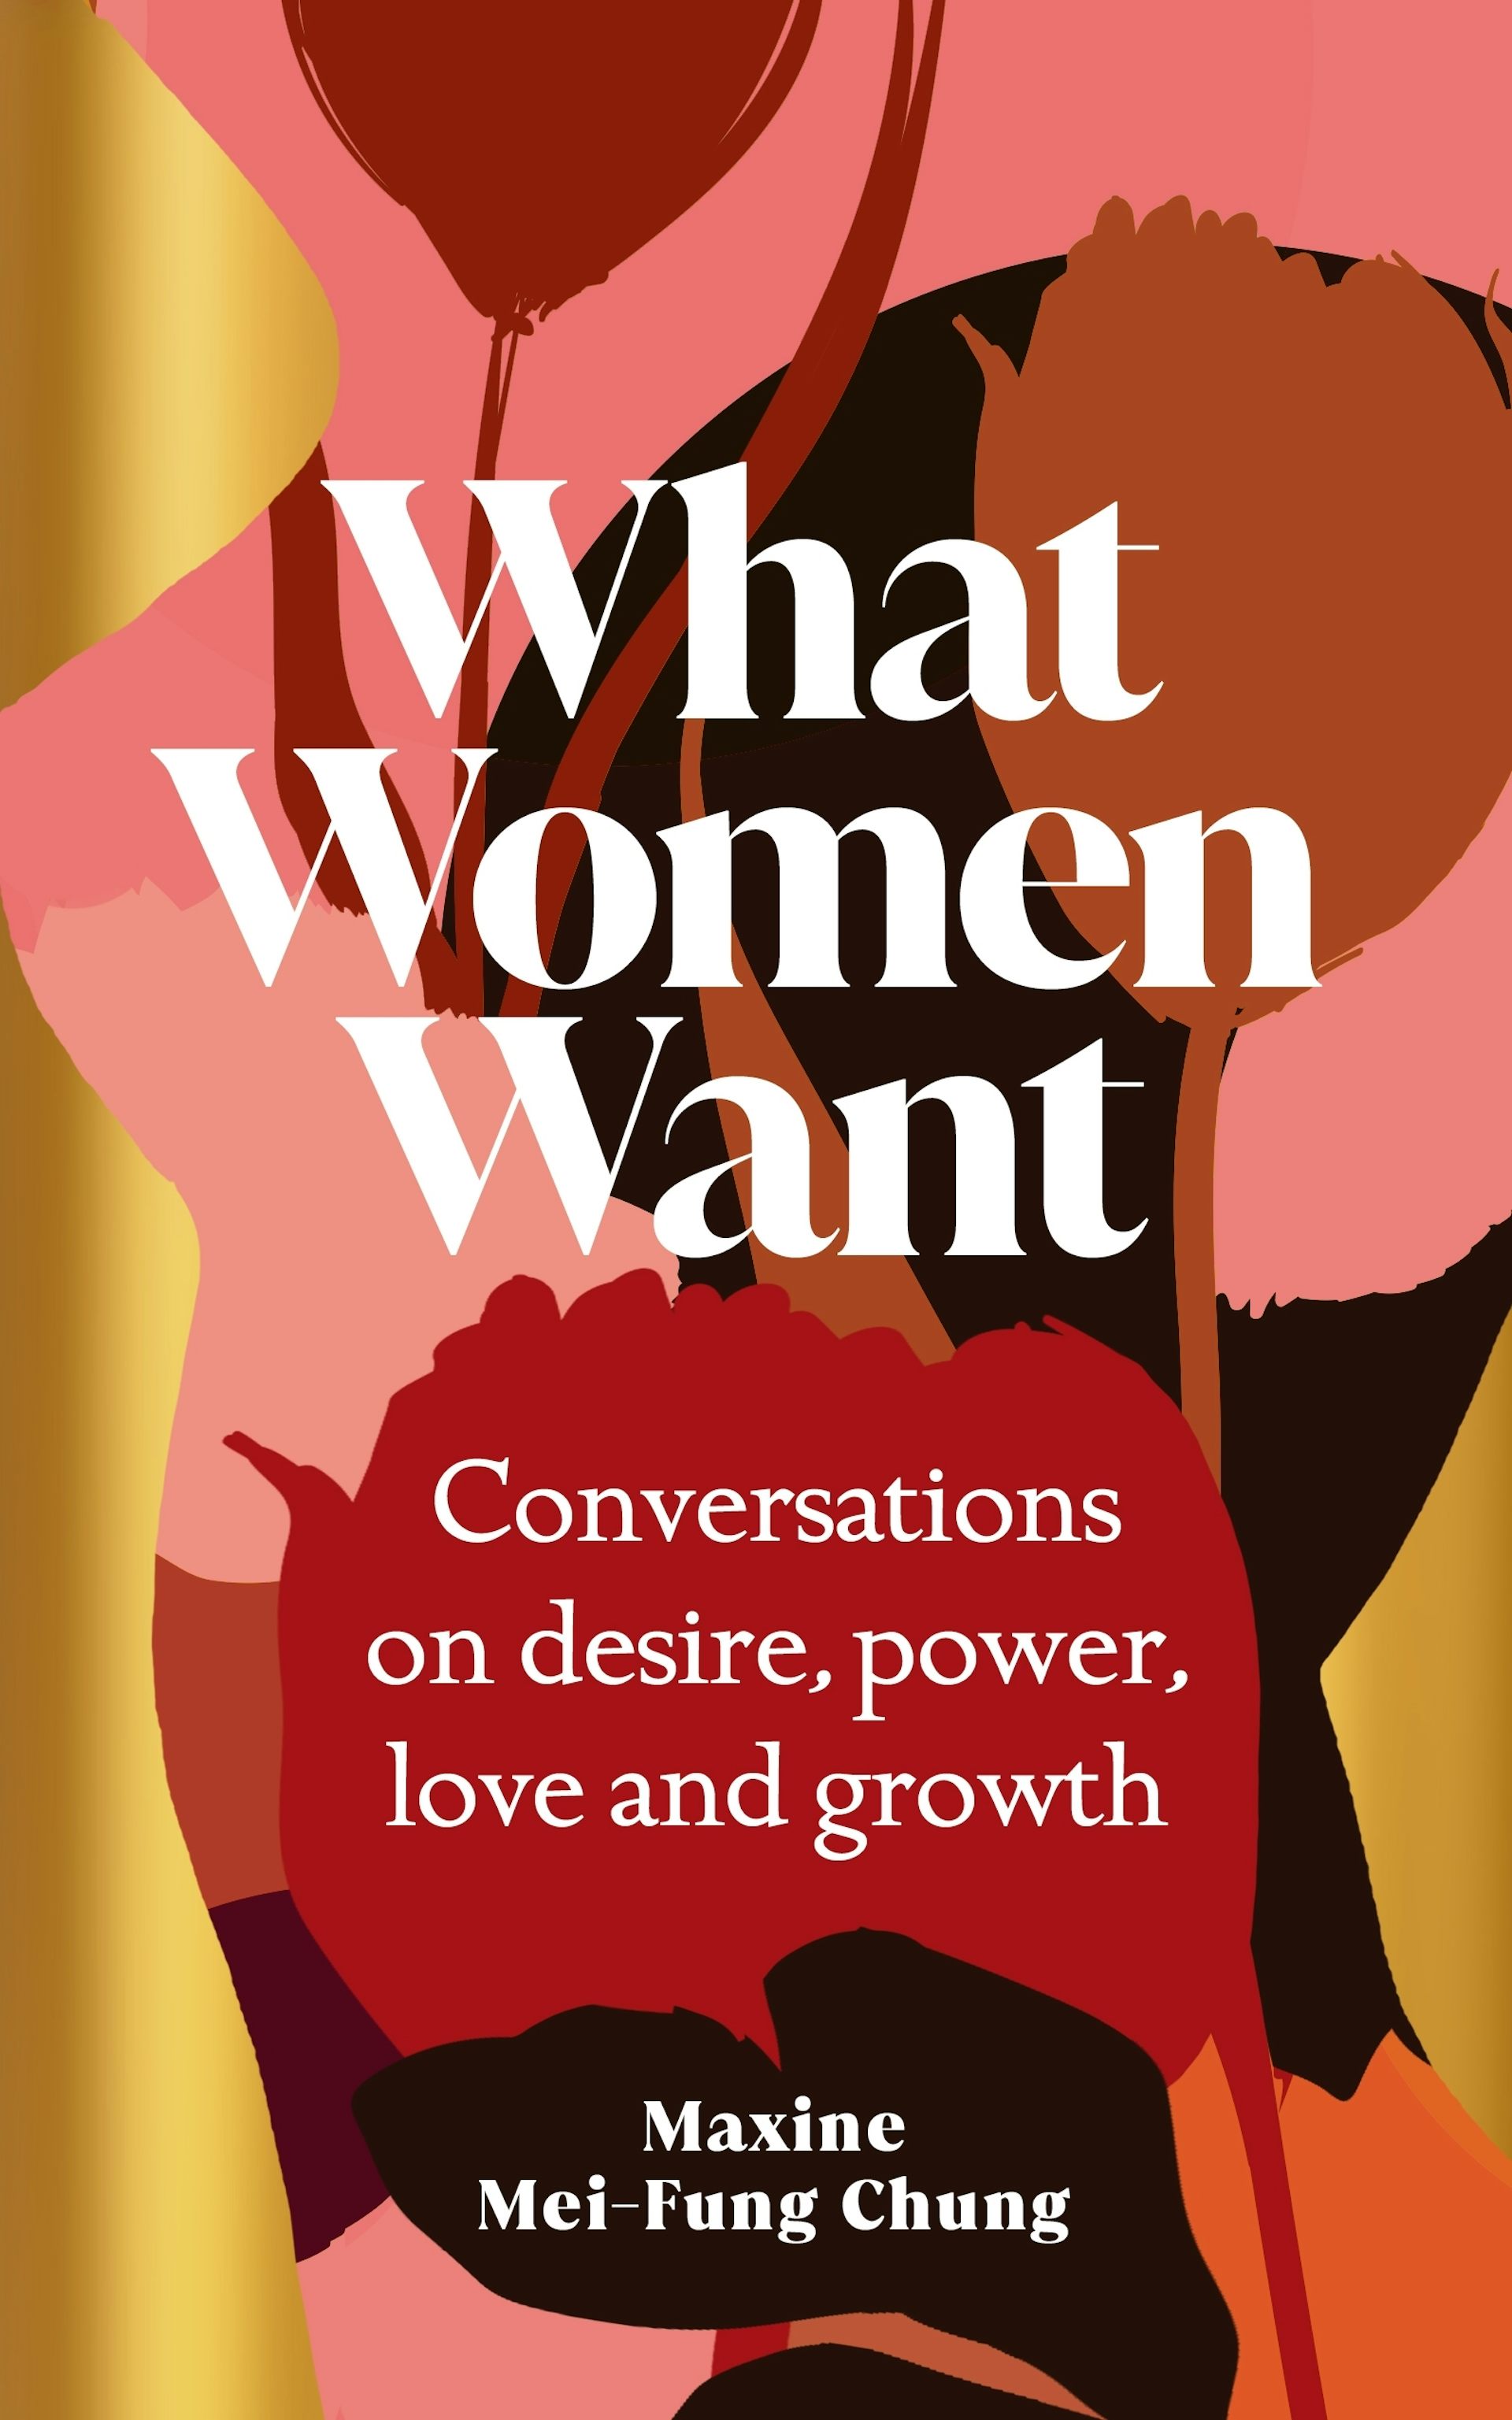 What do women want? Freuds infamous question invites voyeurism